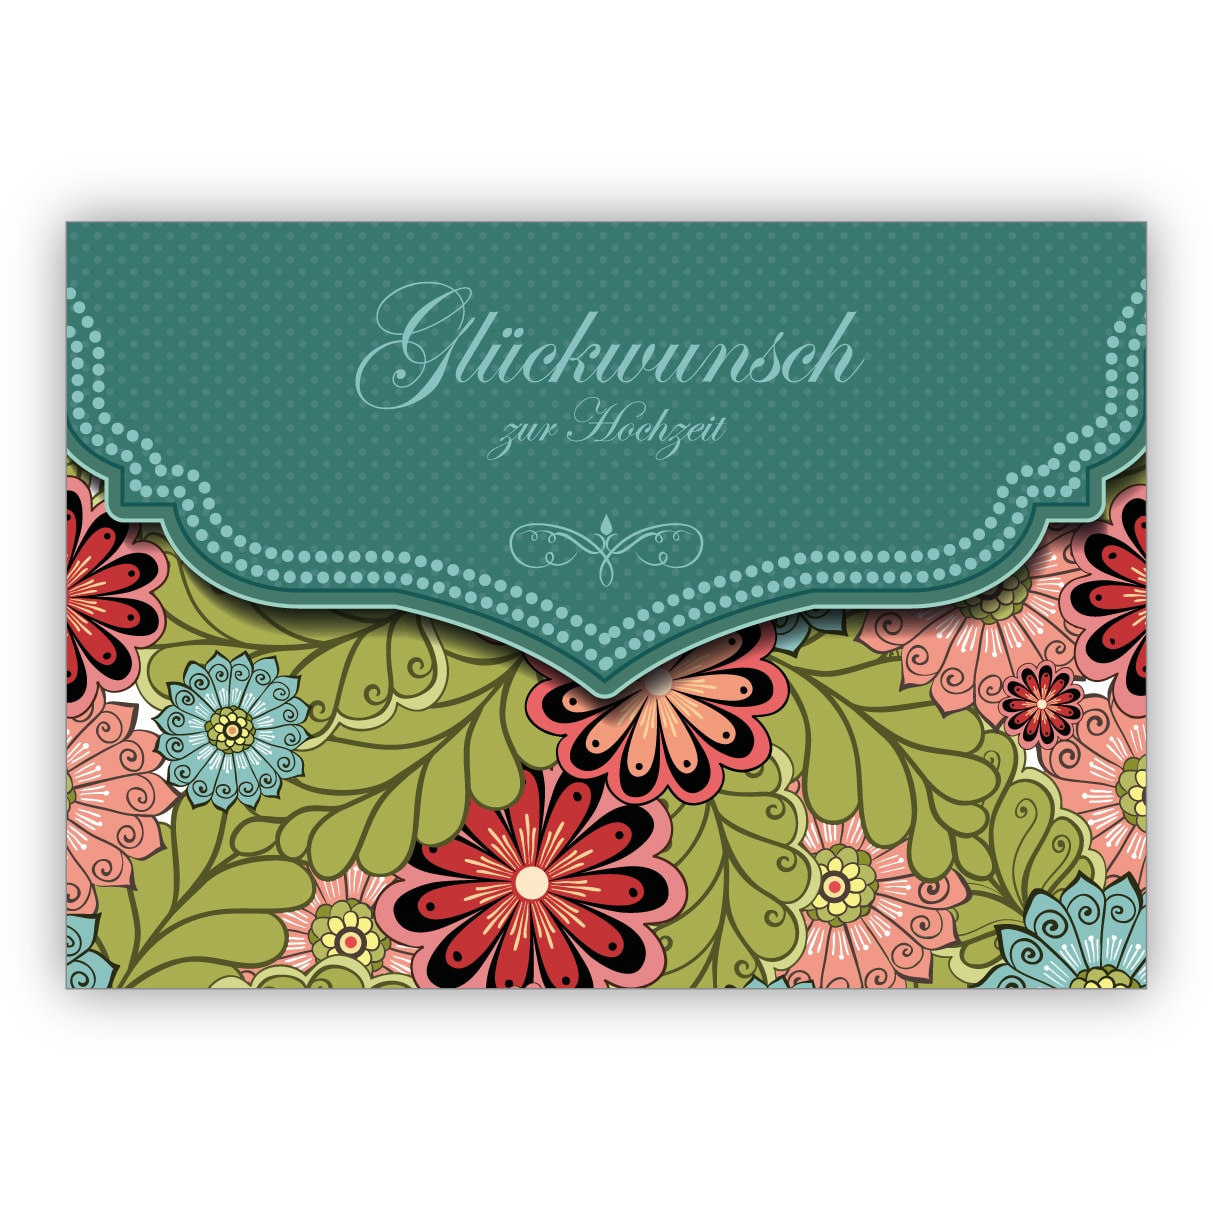 Edle Glückwunschkarten Zur Hochzeit
 Edle Hochzeitskarte mit modernem Blumen Muster in grün